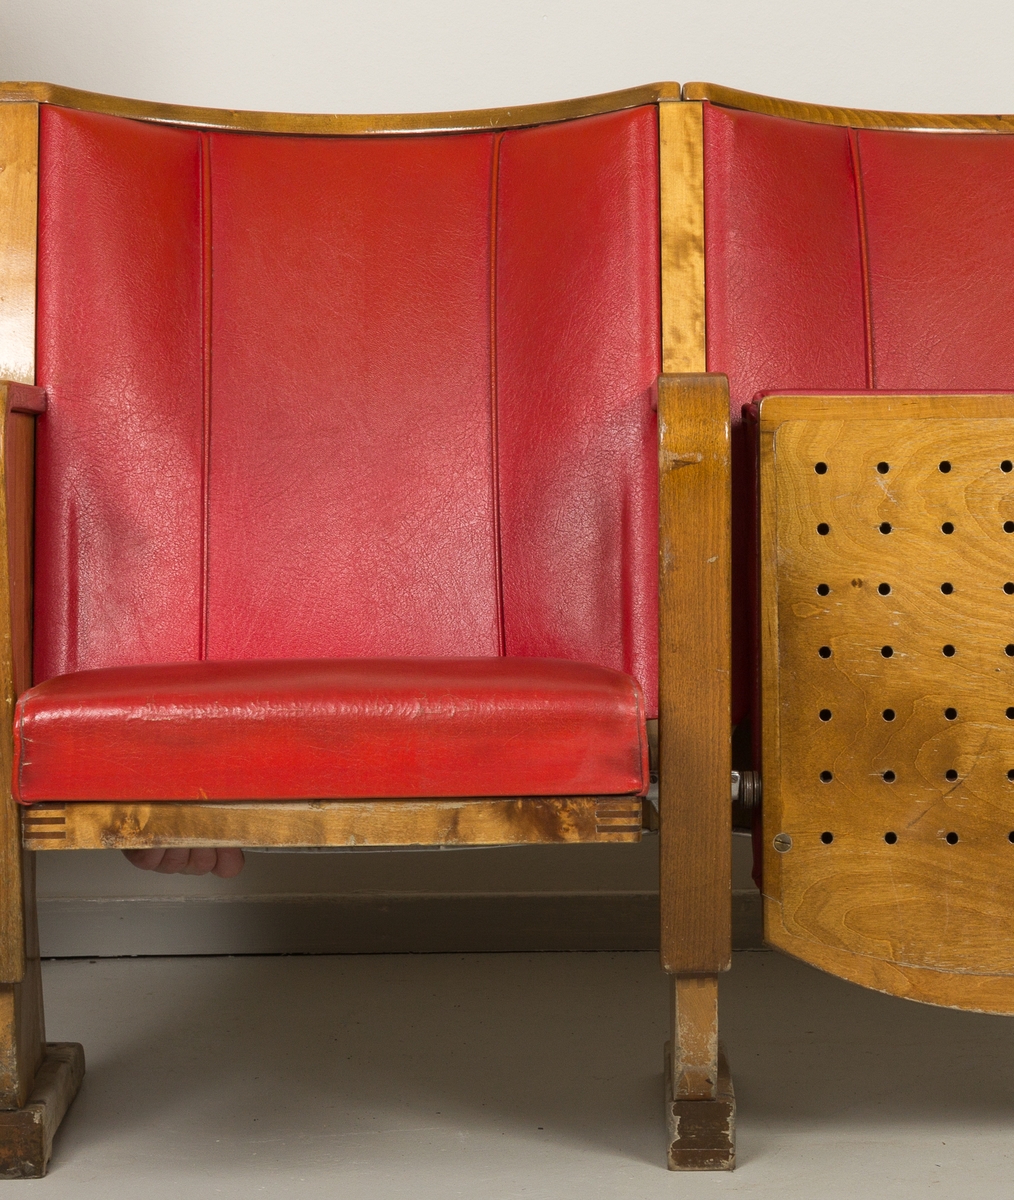 Kinostoler, to sammenhengende klappstoler i bjørk med armlener i alm, trukket i rødt skinn/skai. Brukt i Harstad kino fra 1954 til oppussingen i 1988.
